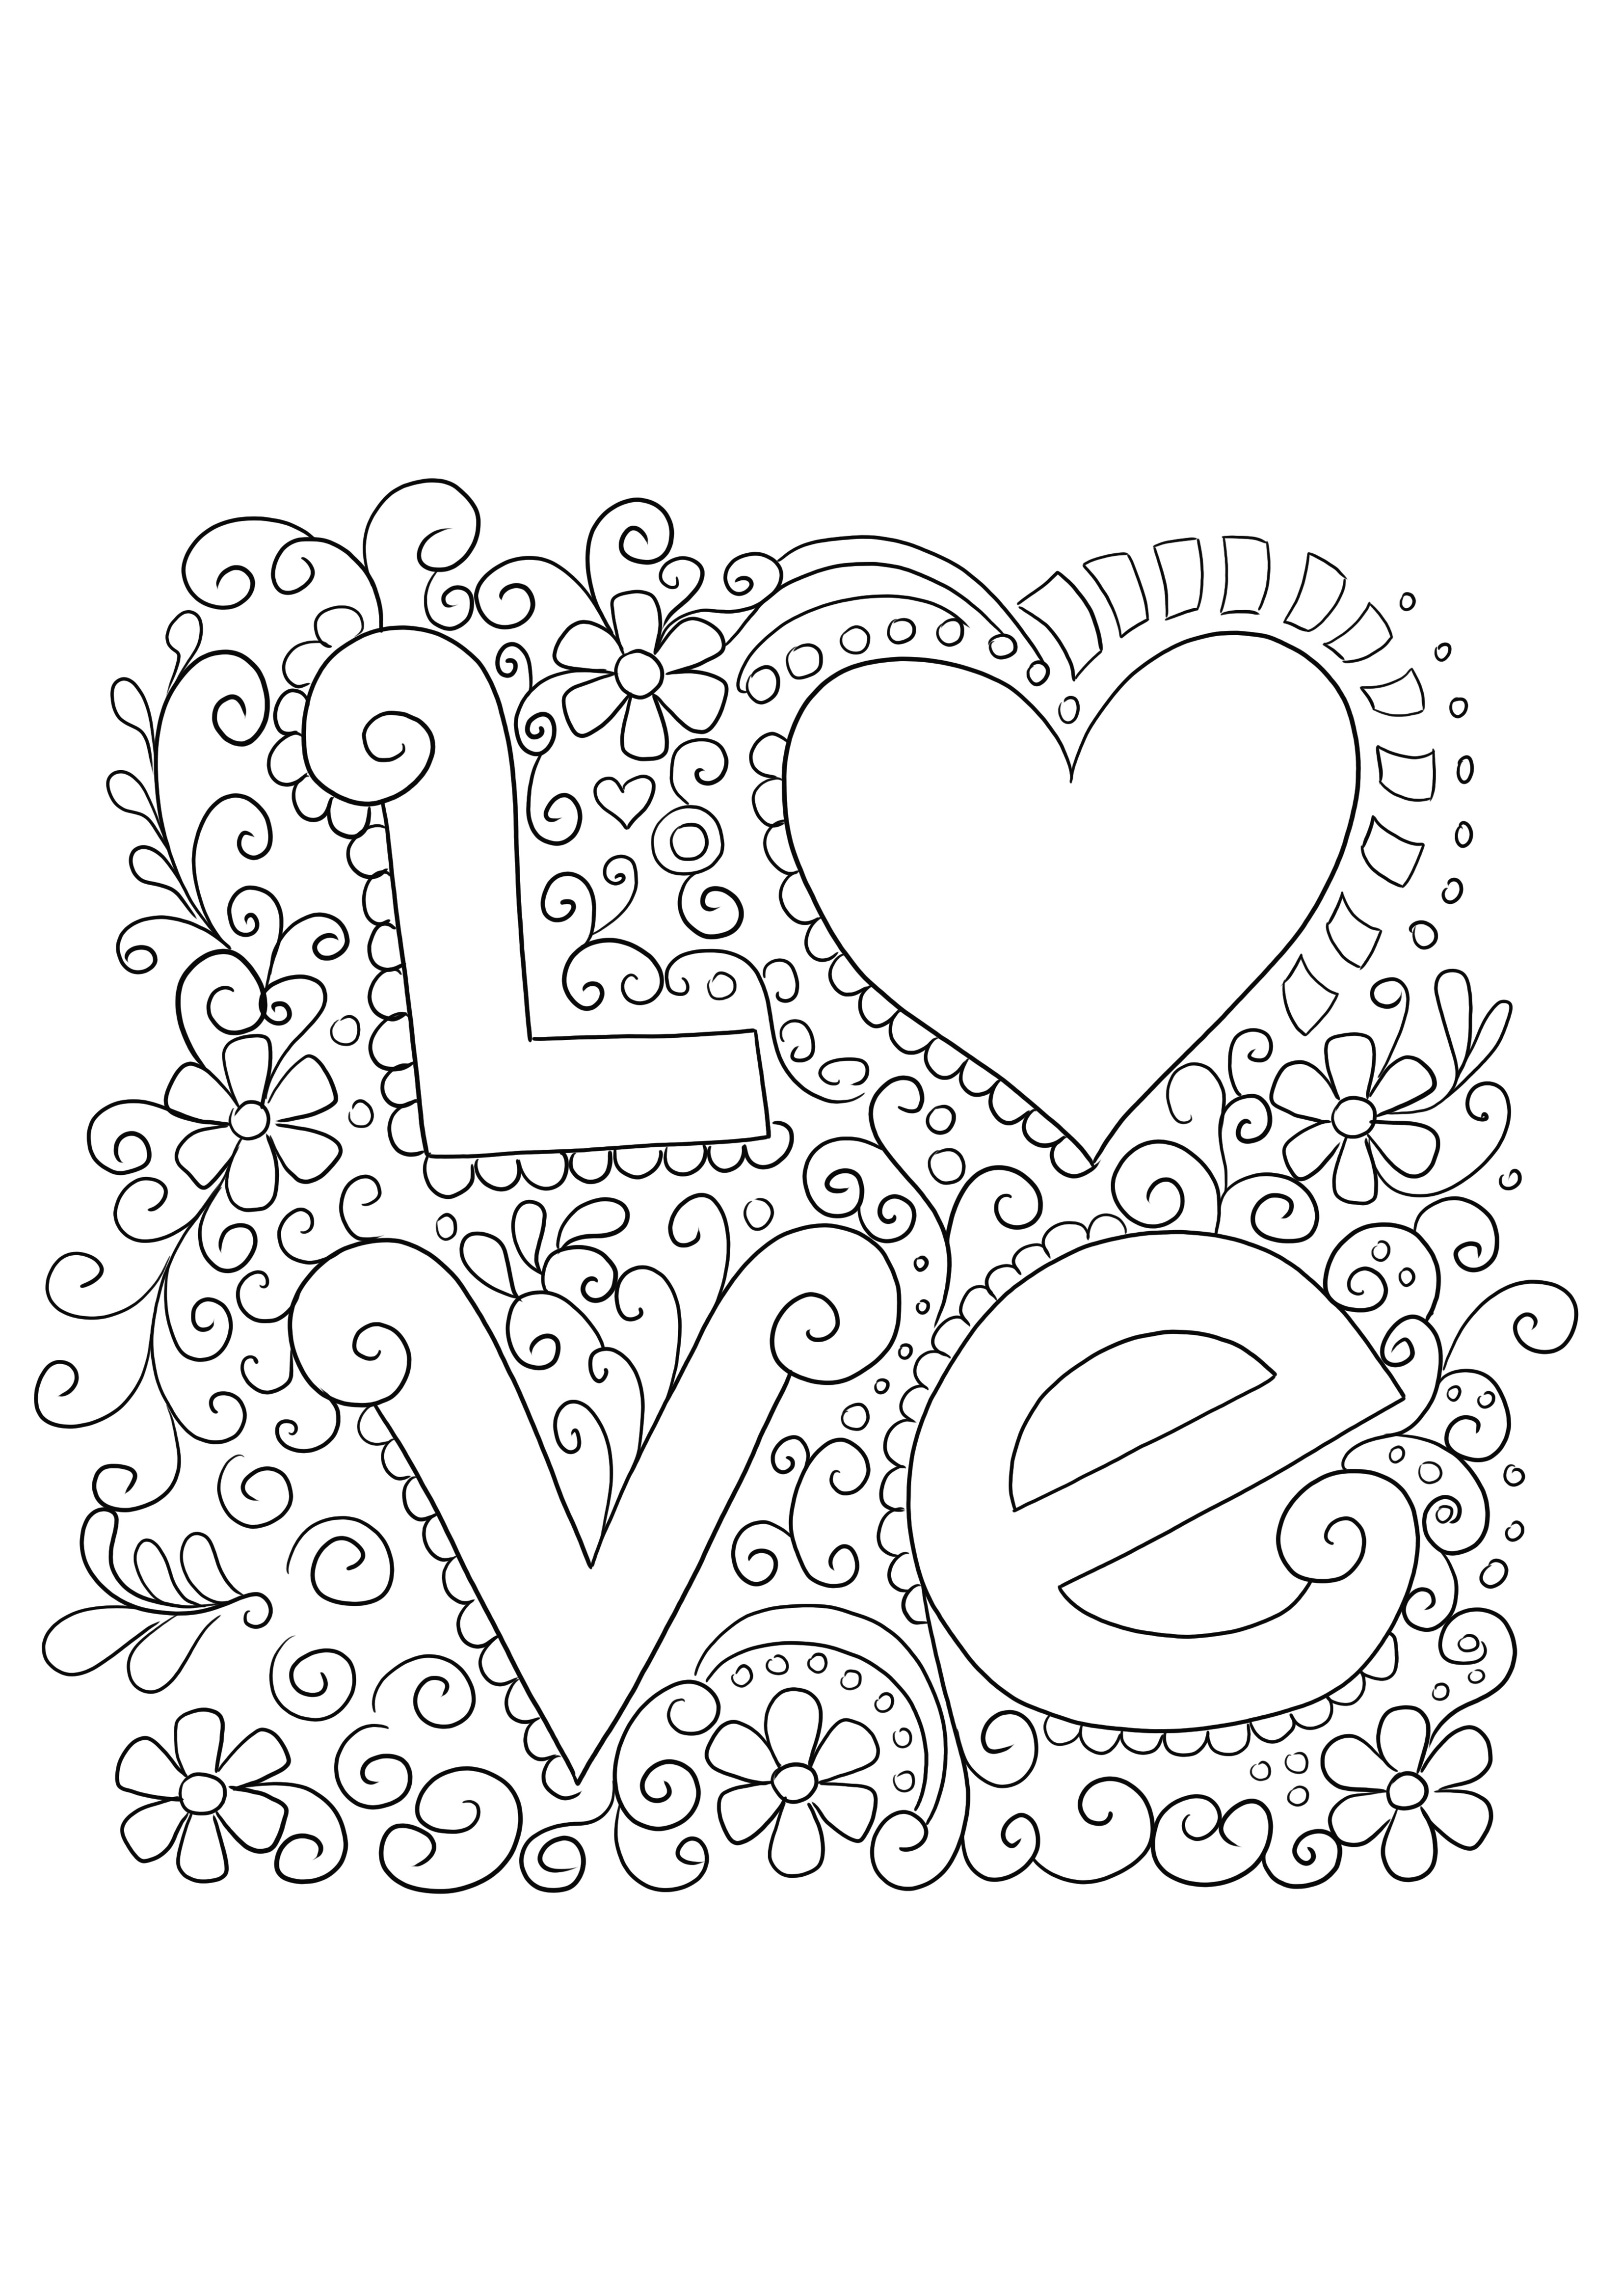 Łatwa i bezpłatna kartka miłosna do wydrukowania i pokolorowania z okazji Walentynek